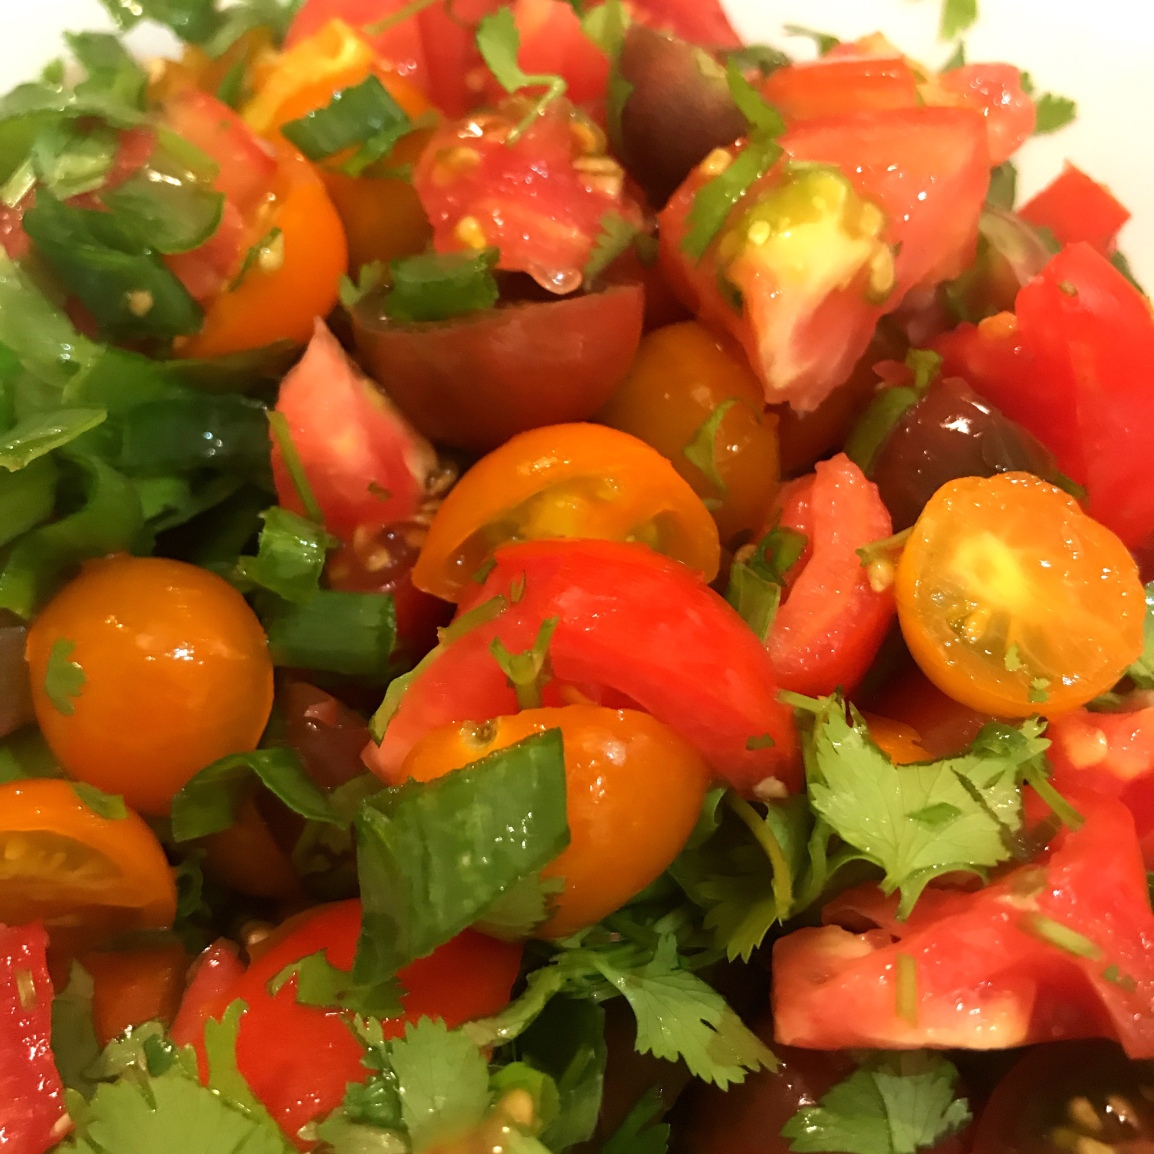 A closeup of pico di gallo, a fresh raw tomato and herb dish